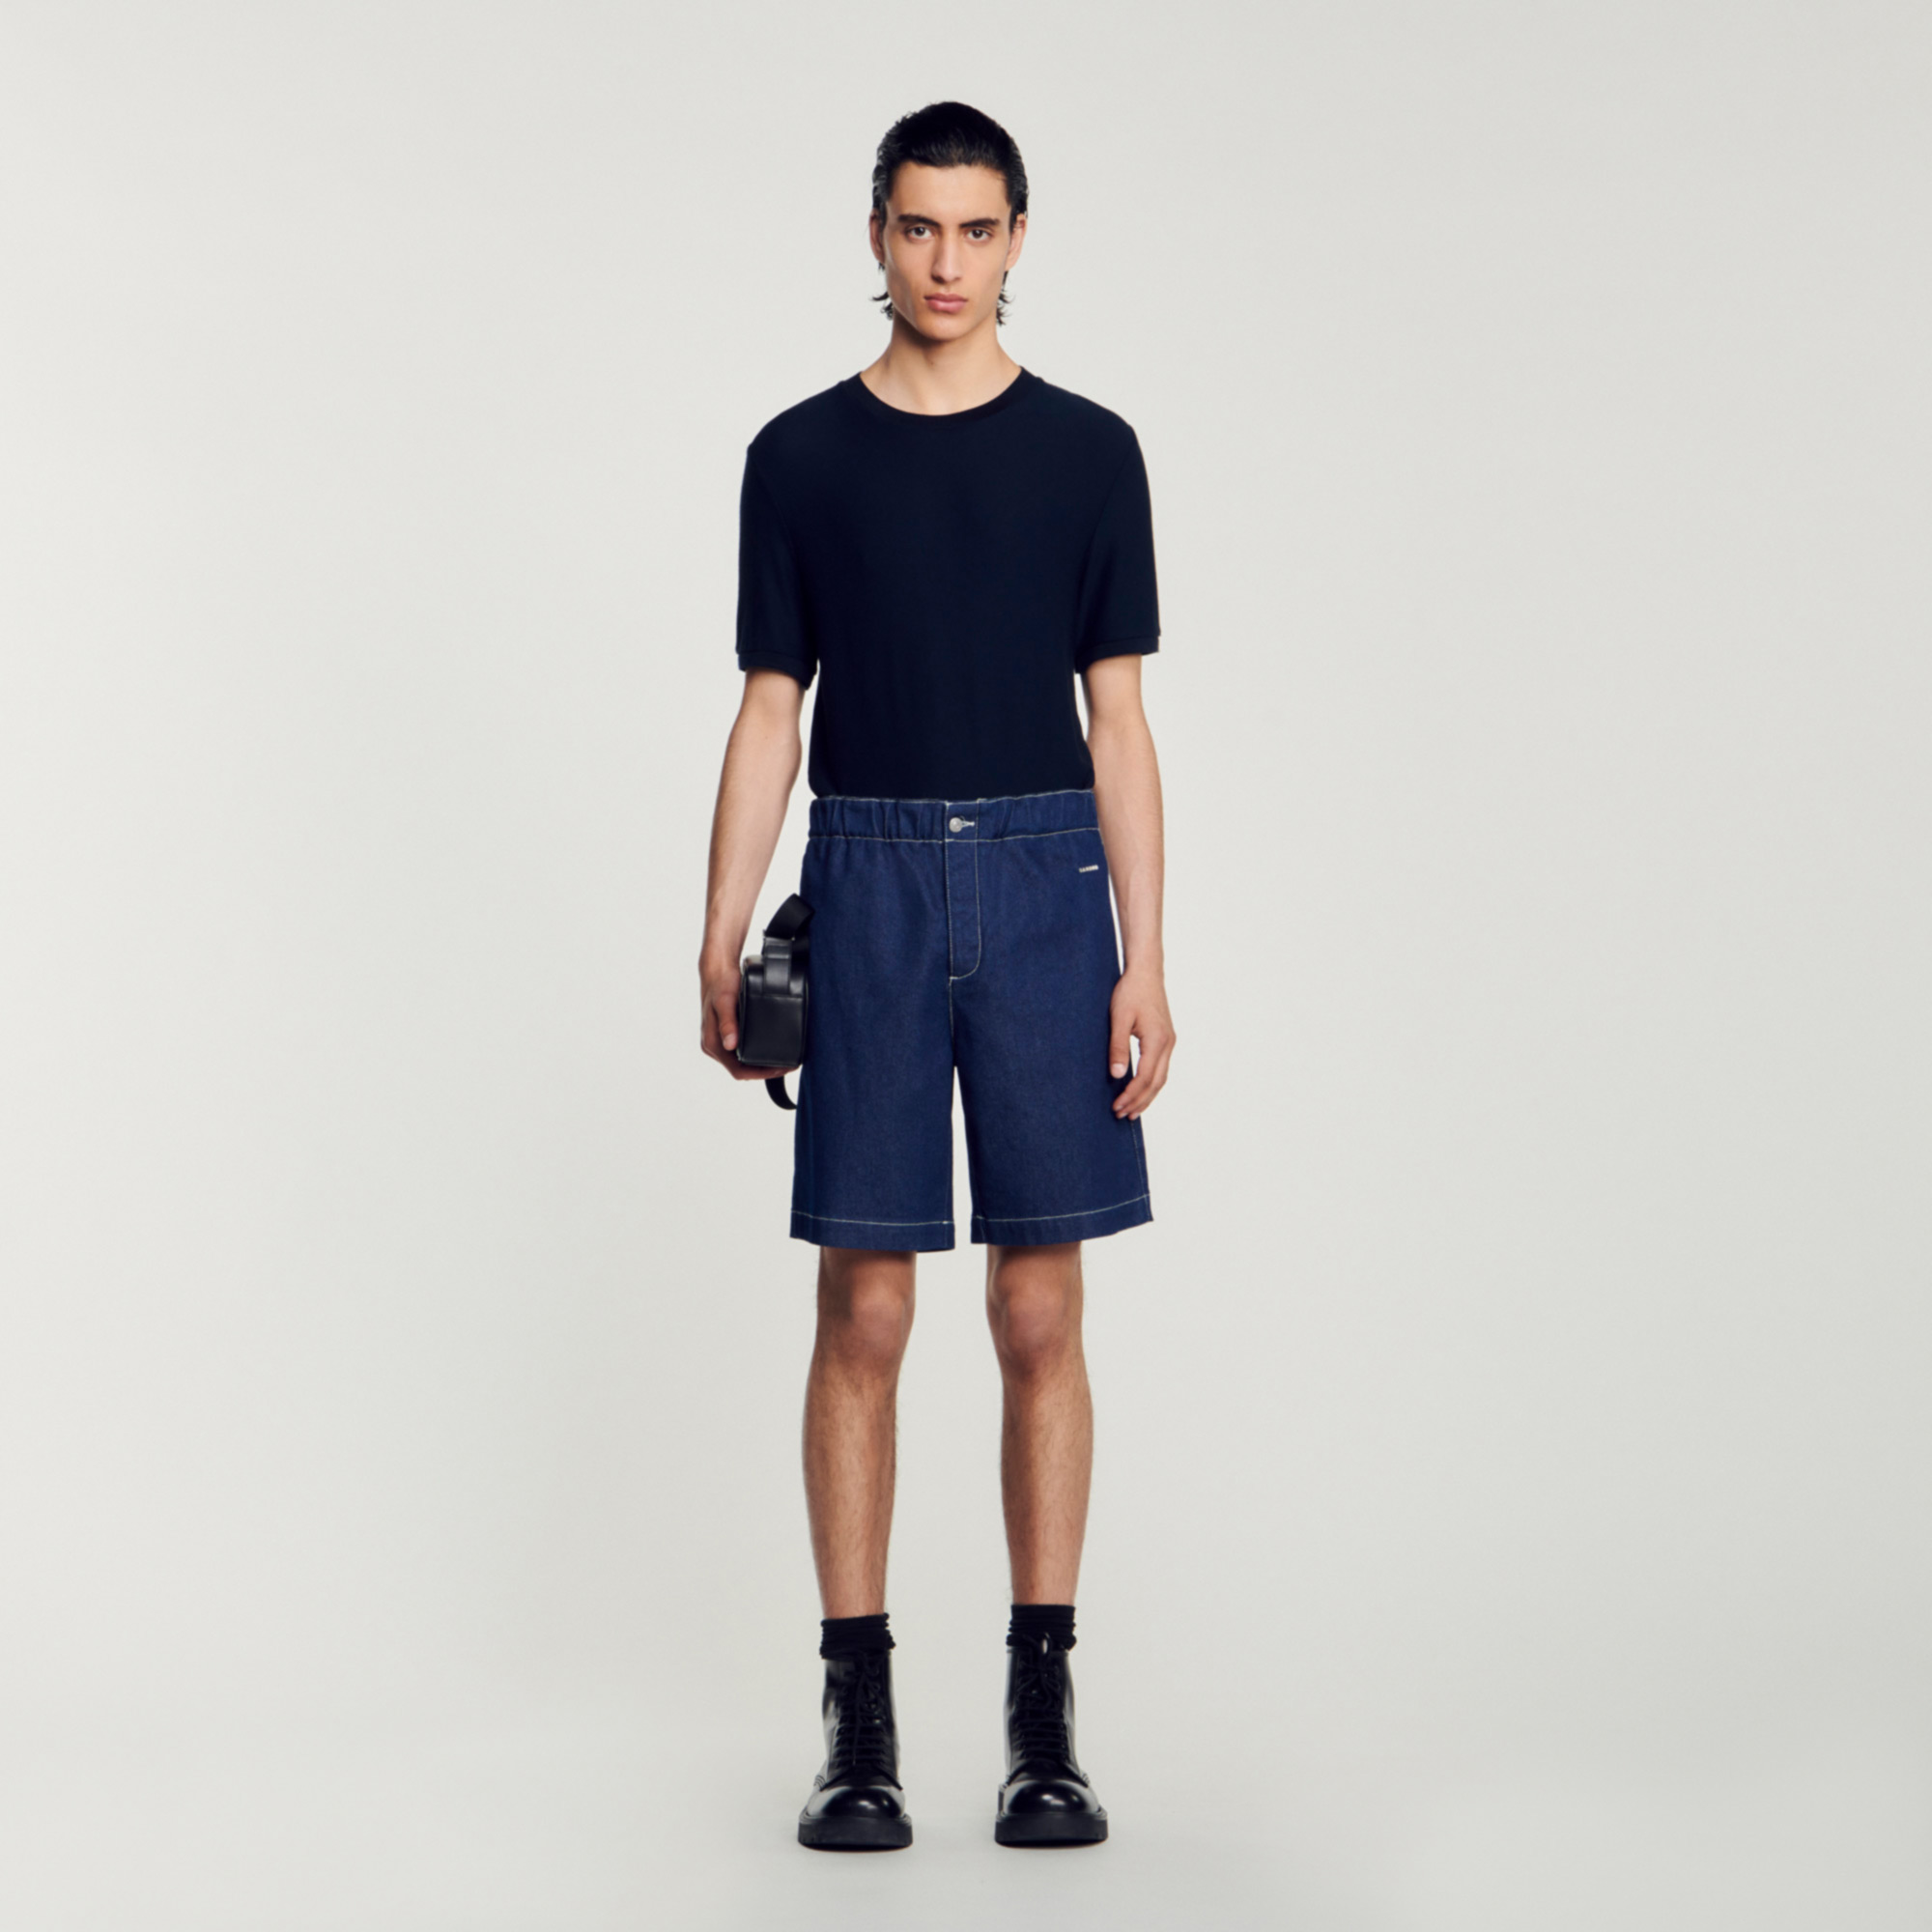 Sandro cotton Denim shorts